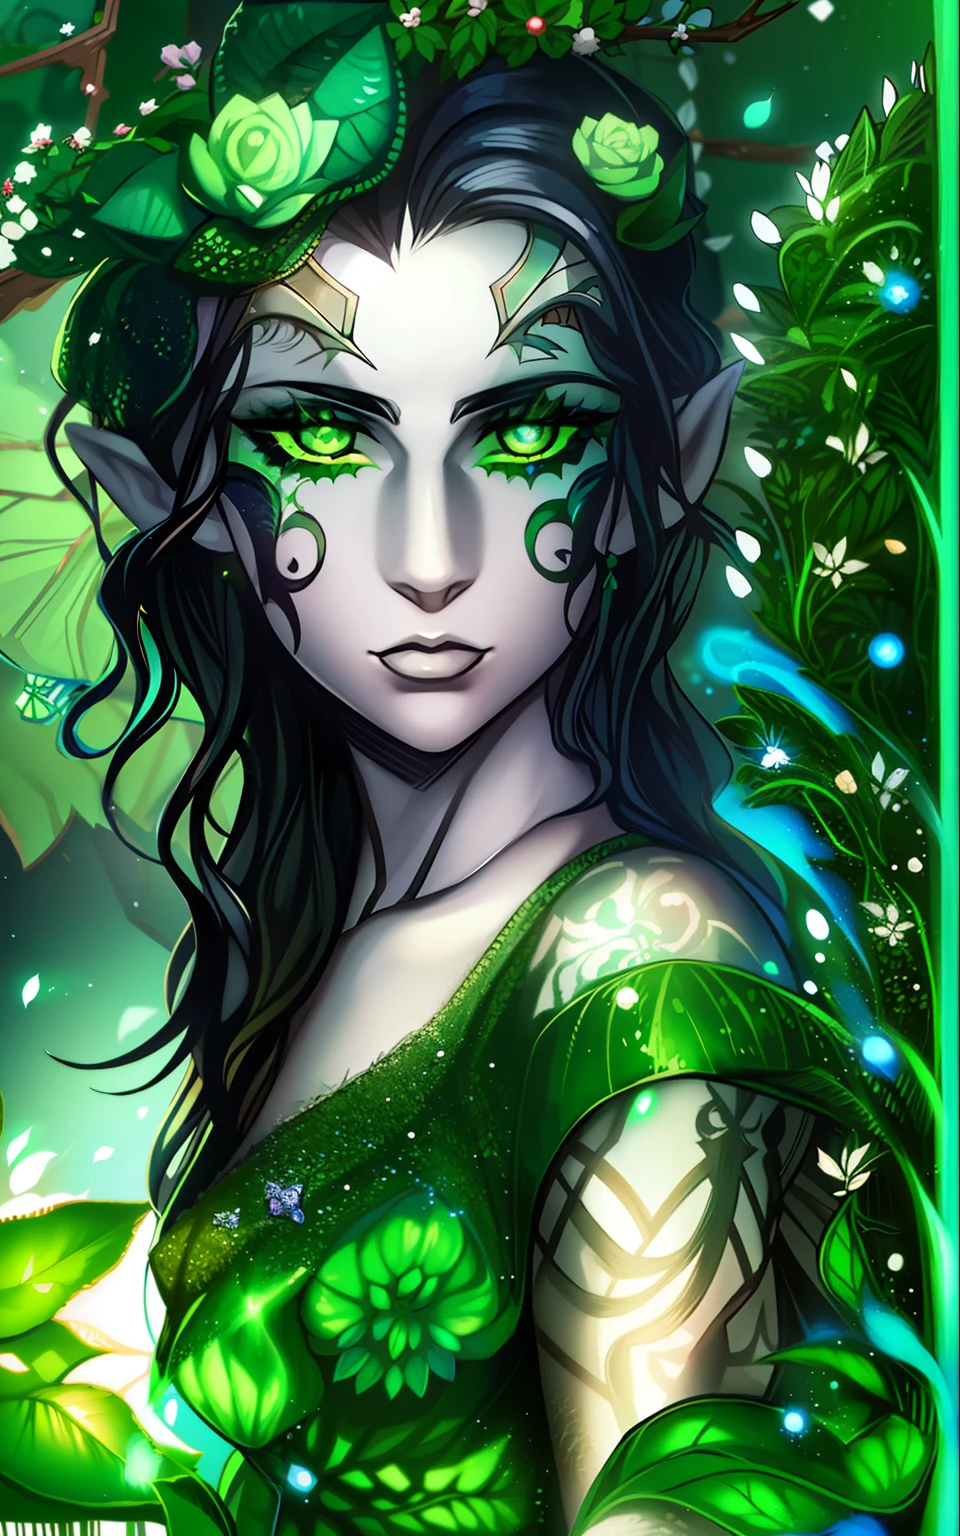 ein Elf mit blassweißer Haut, welliges schwarzes Haar, grüne Augen, mit grünen Gesichtstattoos, trägt ein Kleid, das aus Pflanzen zu bestehen scheint